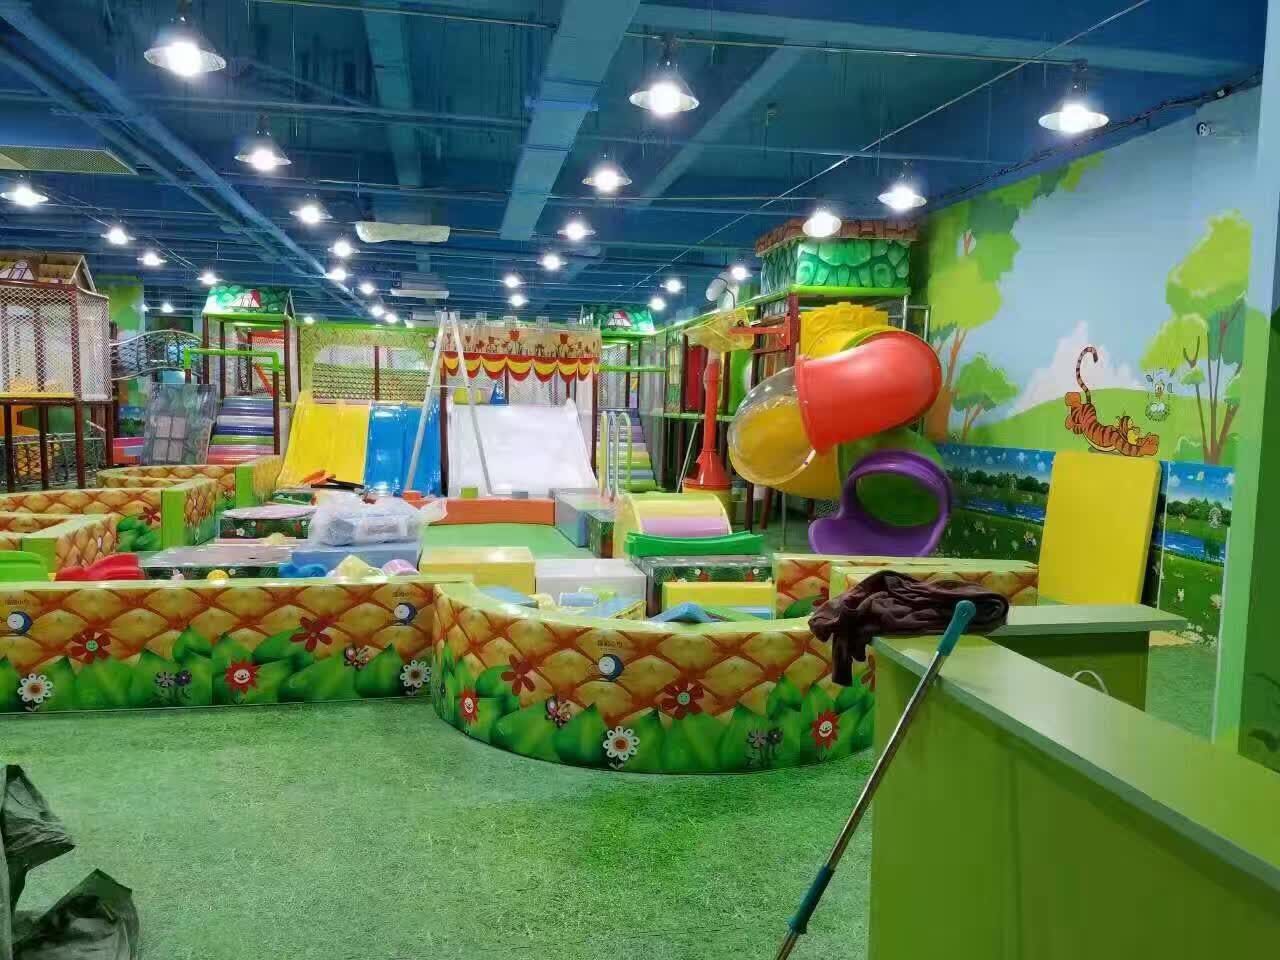 湖南长沙爱乐贝淘气堡儿童玩具滑滑梯蹦蹦床游乐设备厂家